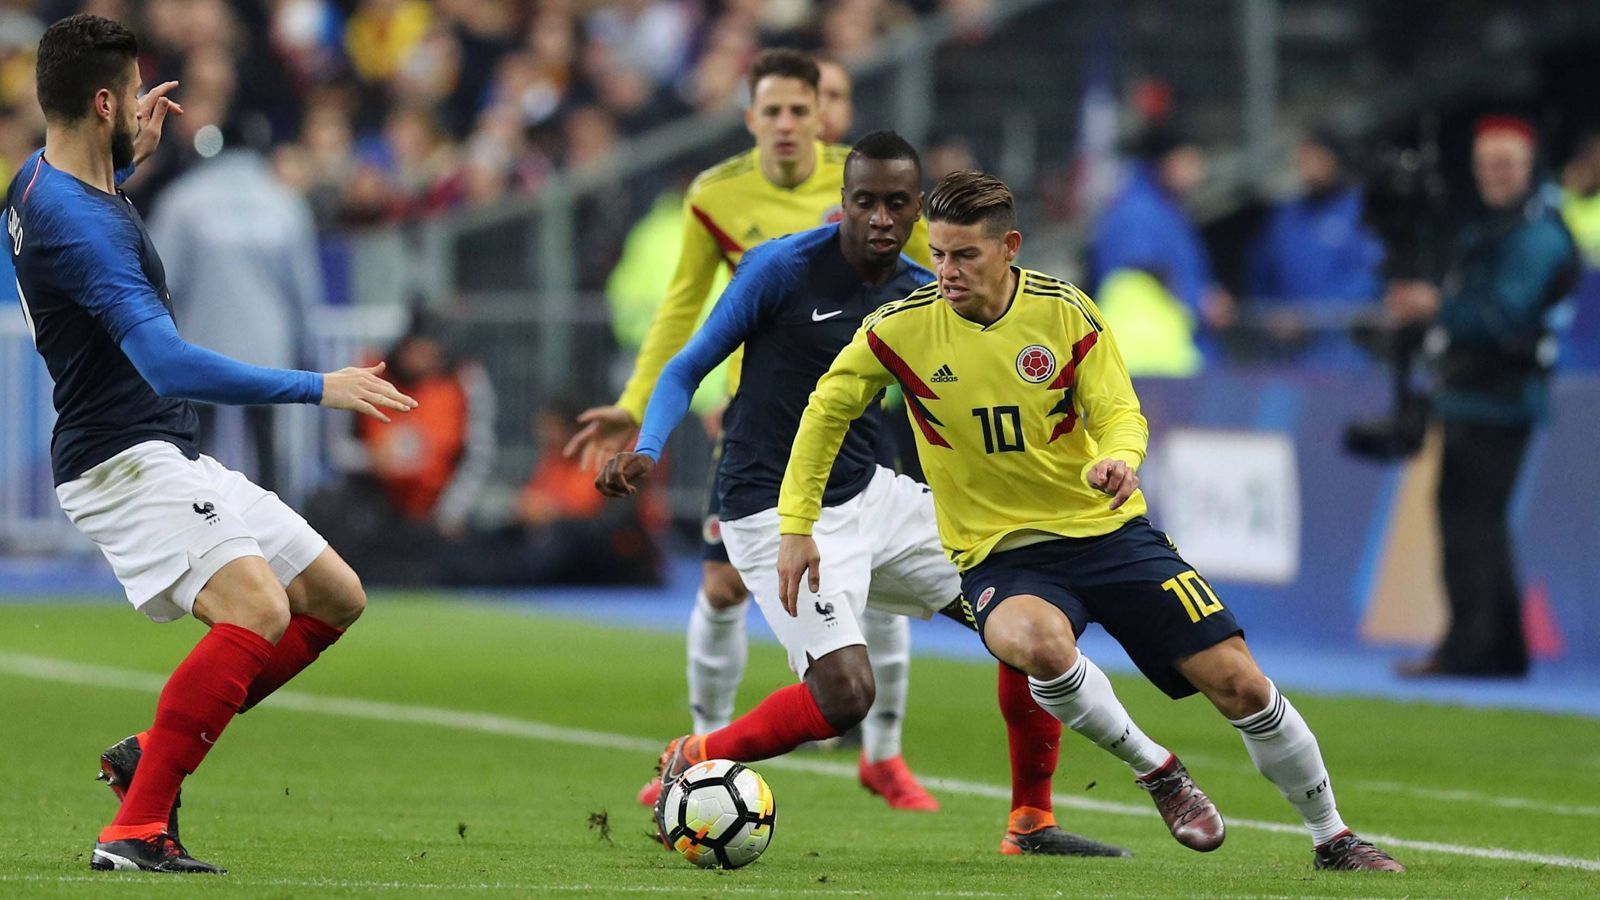 
                <strong>4. Platz: Kolumbien (65.234 Tickets)</strong><br>
                Bei der letzten WM wurde James (Bild) Torschützenkönig. Kolumbien kam bis ins Viertelfinale. Das hat den Fans Appetit auf mehr gemacht.
              